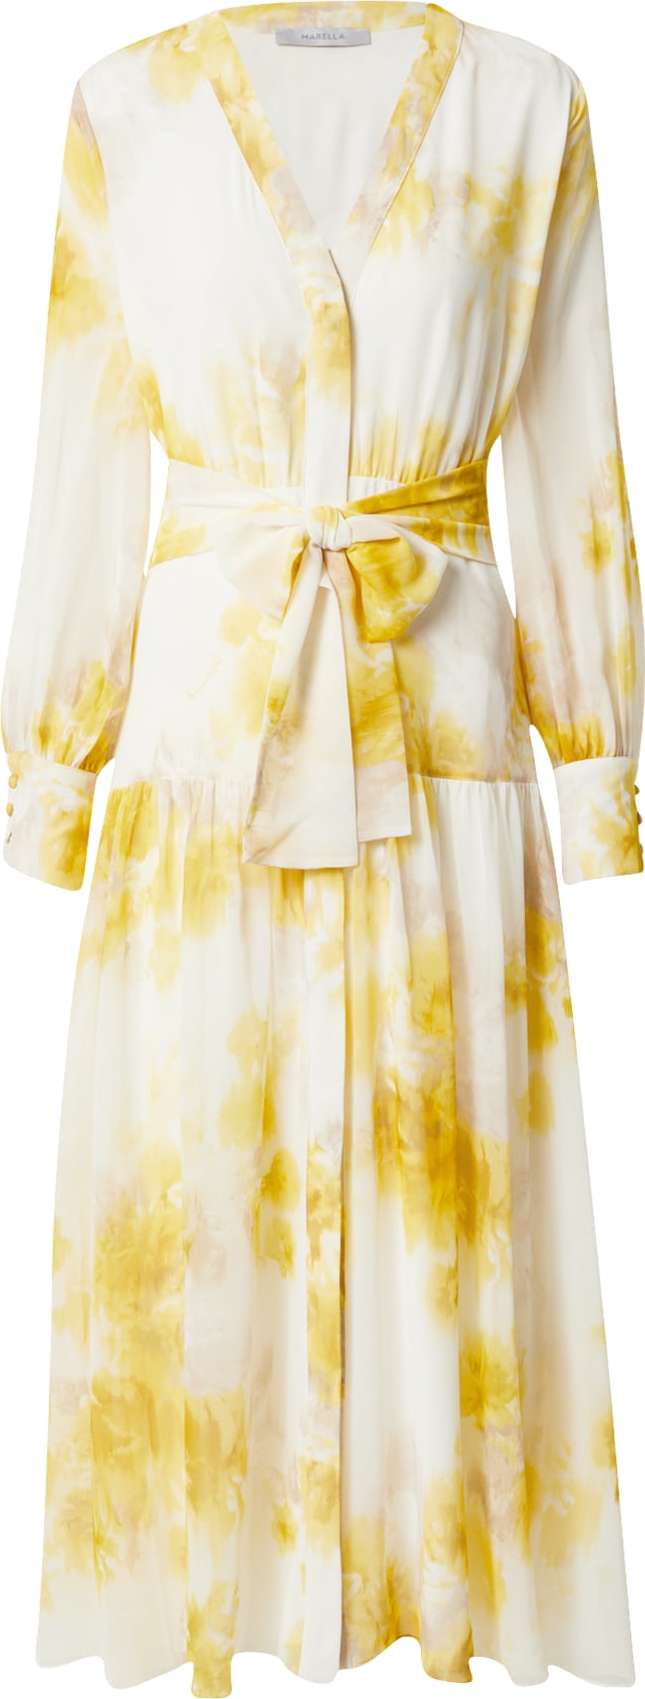 Marella Košilové šaty 'NINETTA' béžová / žlutá